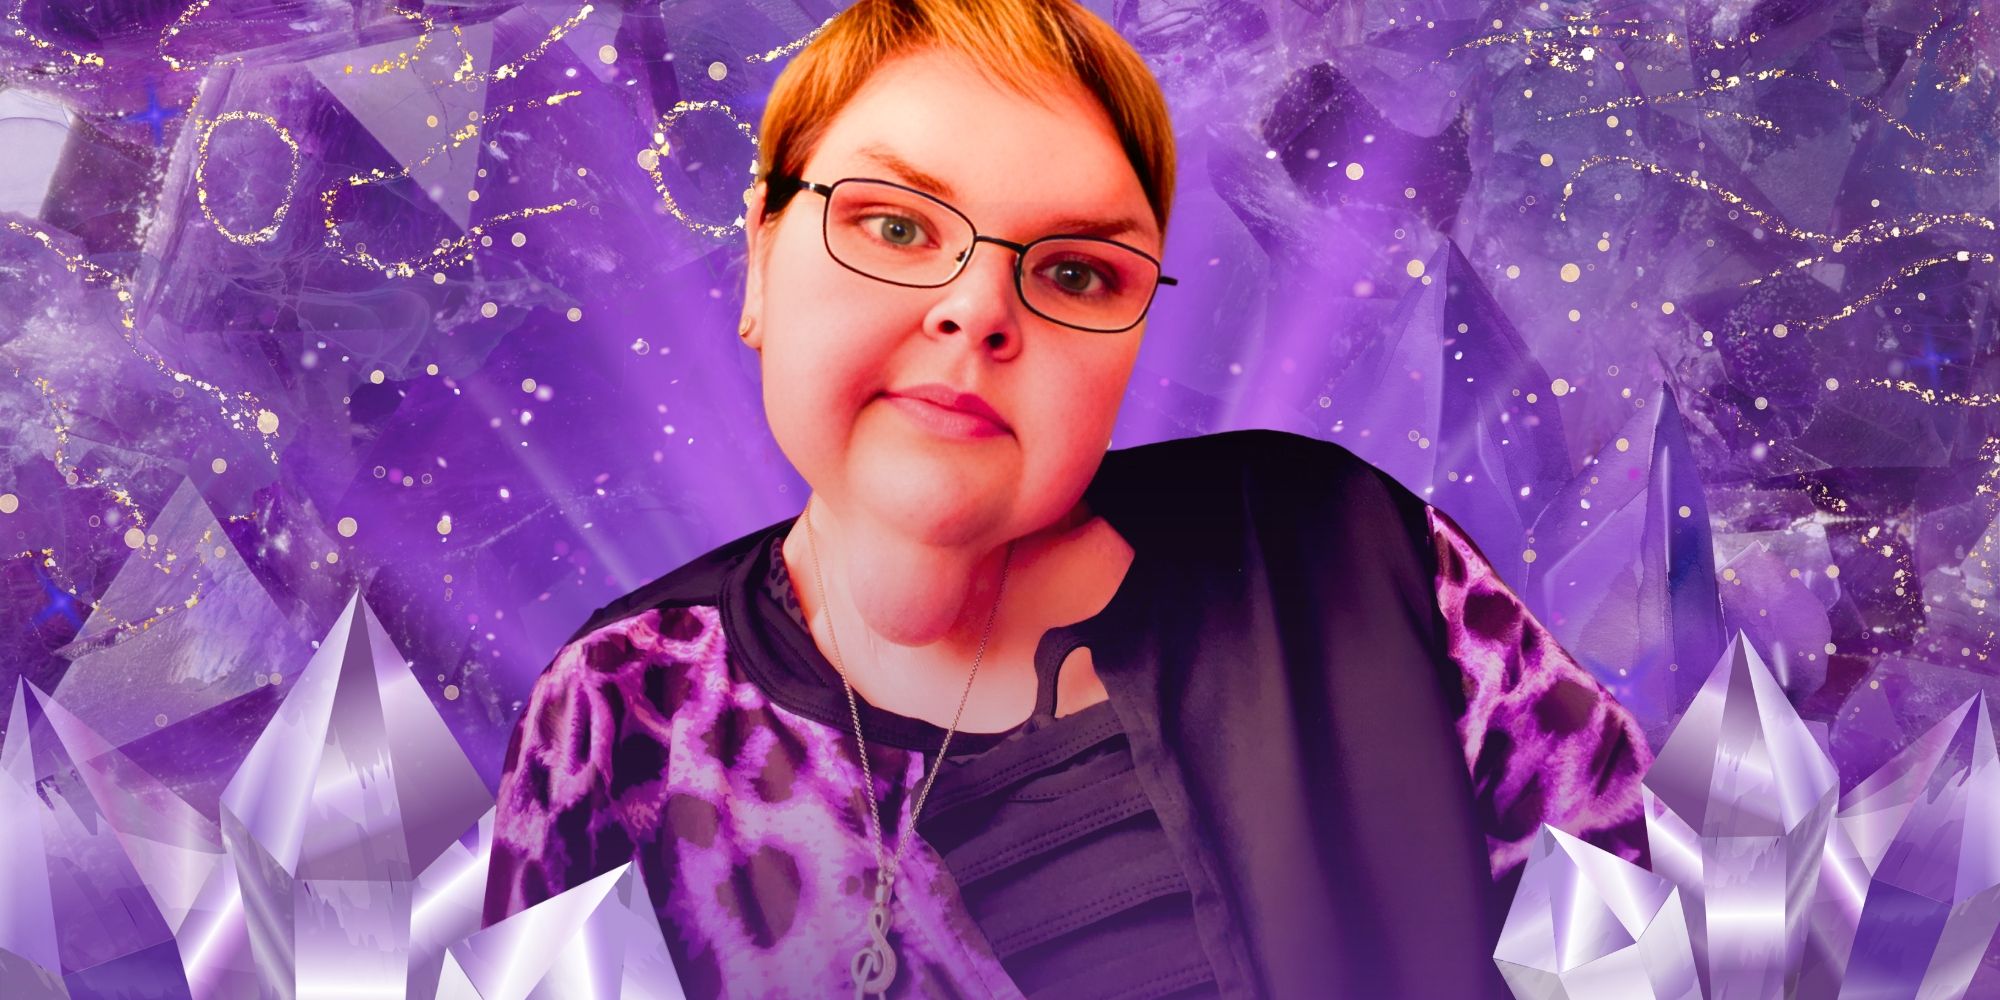 Hermanas de 1000 libras: “¡Lluvia púrpura!”: Los atuendos morados más nuevos de Tammy Slaton después de un hito extraordinario en la pérdida de peso